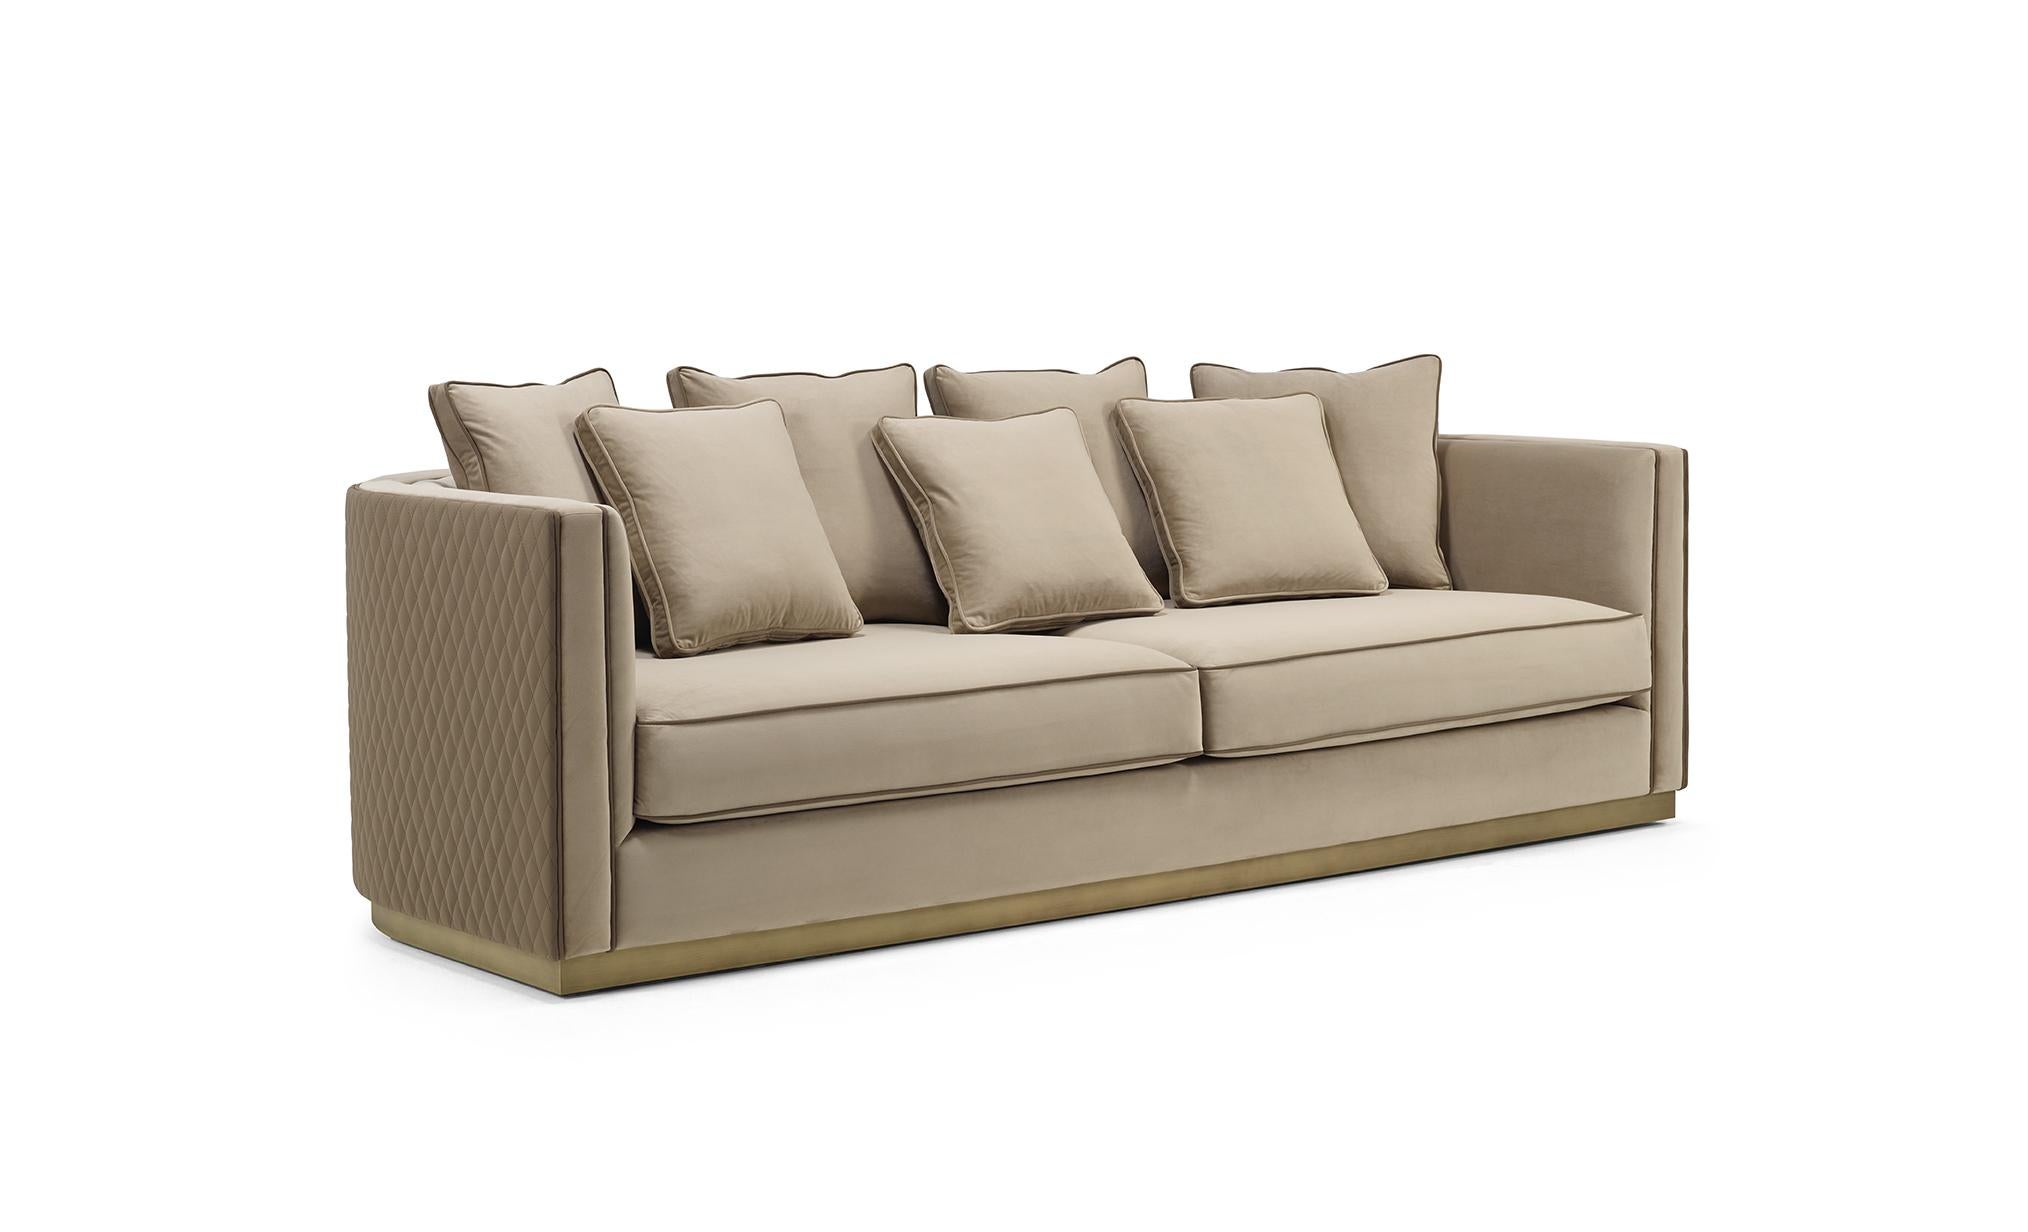 GRANT ist ein vornehmes Sofa mit einer umhüllenden Rückenlehne und einem äußerst raffinierten Design, das durch die mit Federn gefüllten Kissen ergänzt wird, die einen hohen Komfort bieten. Grant ermöglicht die Kombination verschiedener Texturen auf